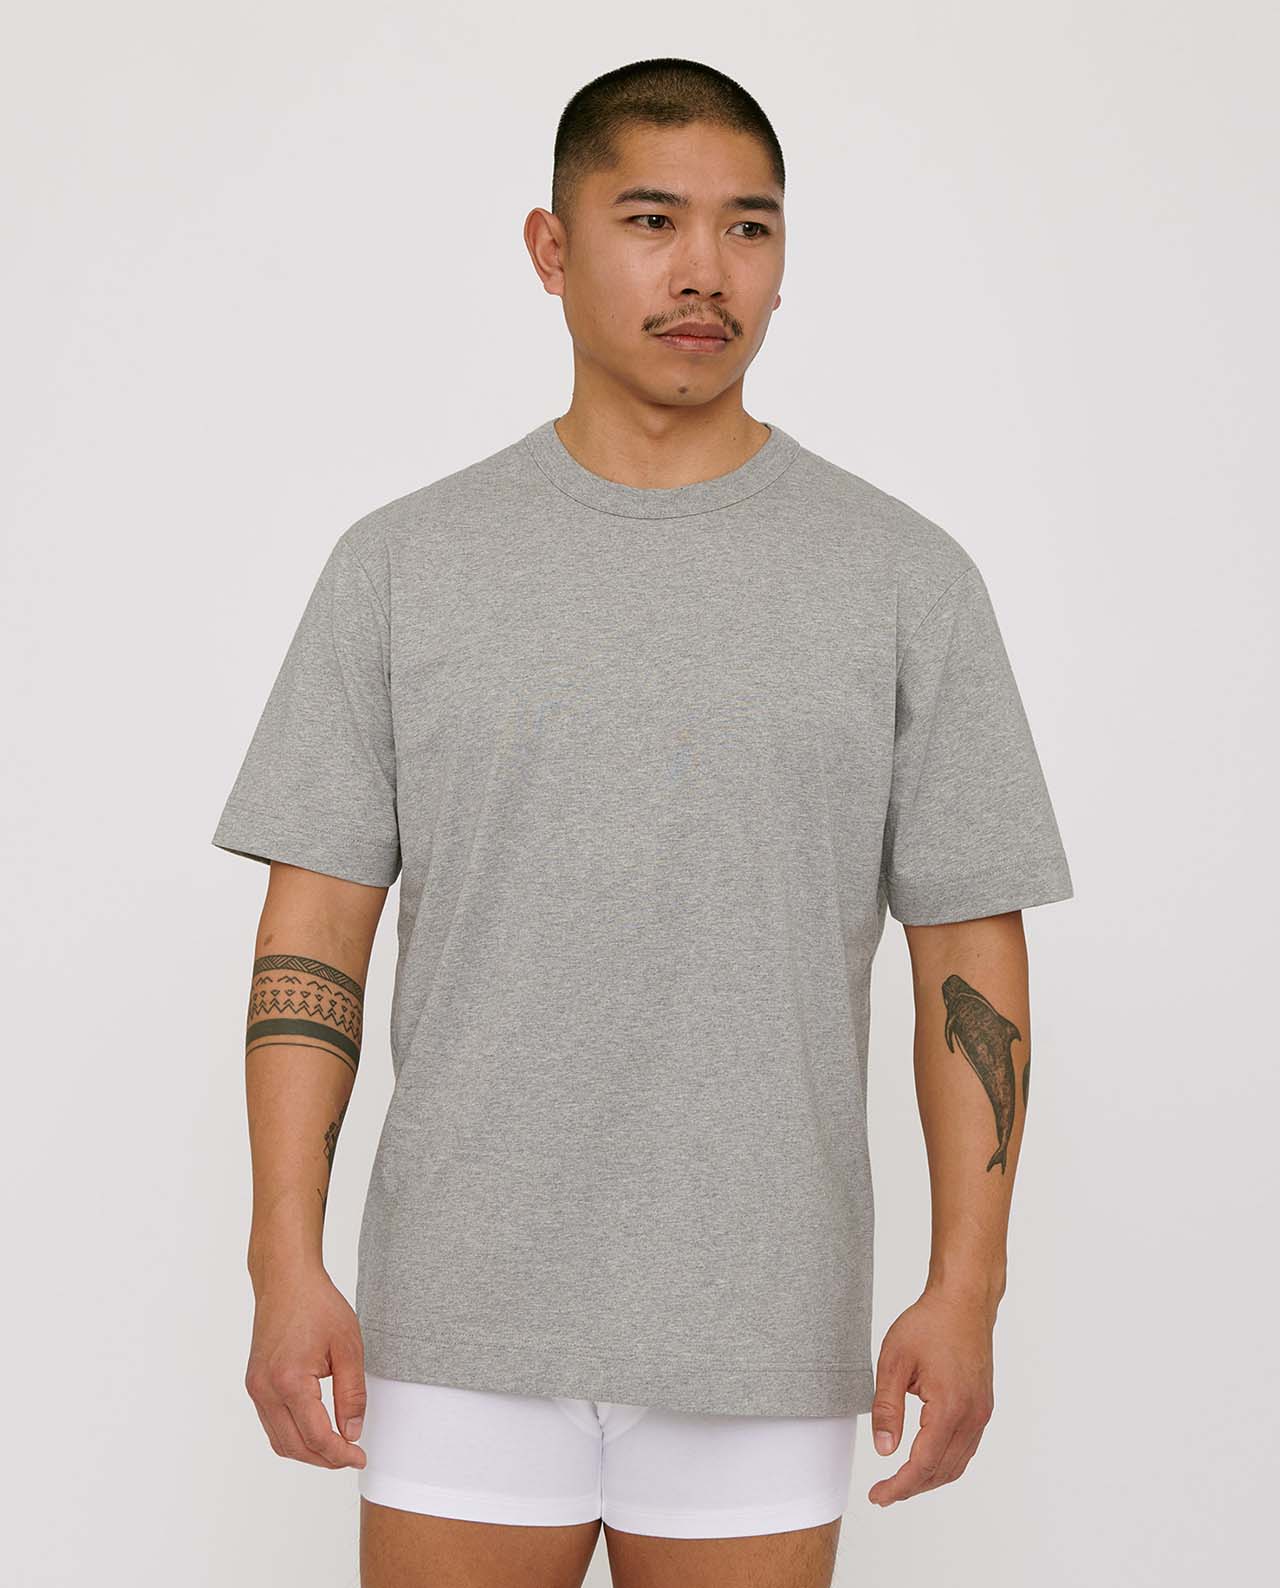 marché commun organic basics t-shirt boxy homme coton biologique gris